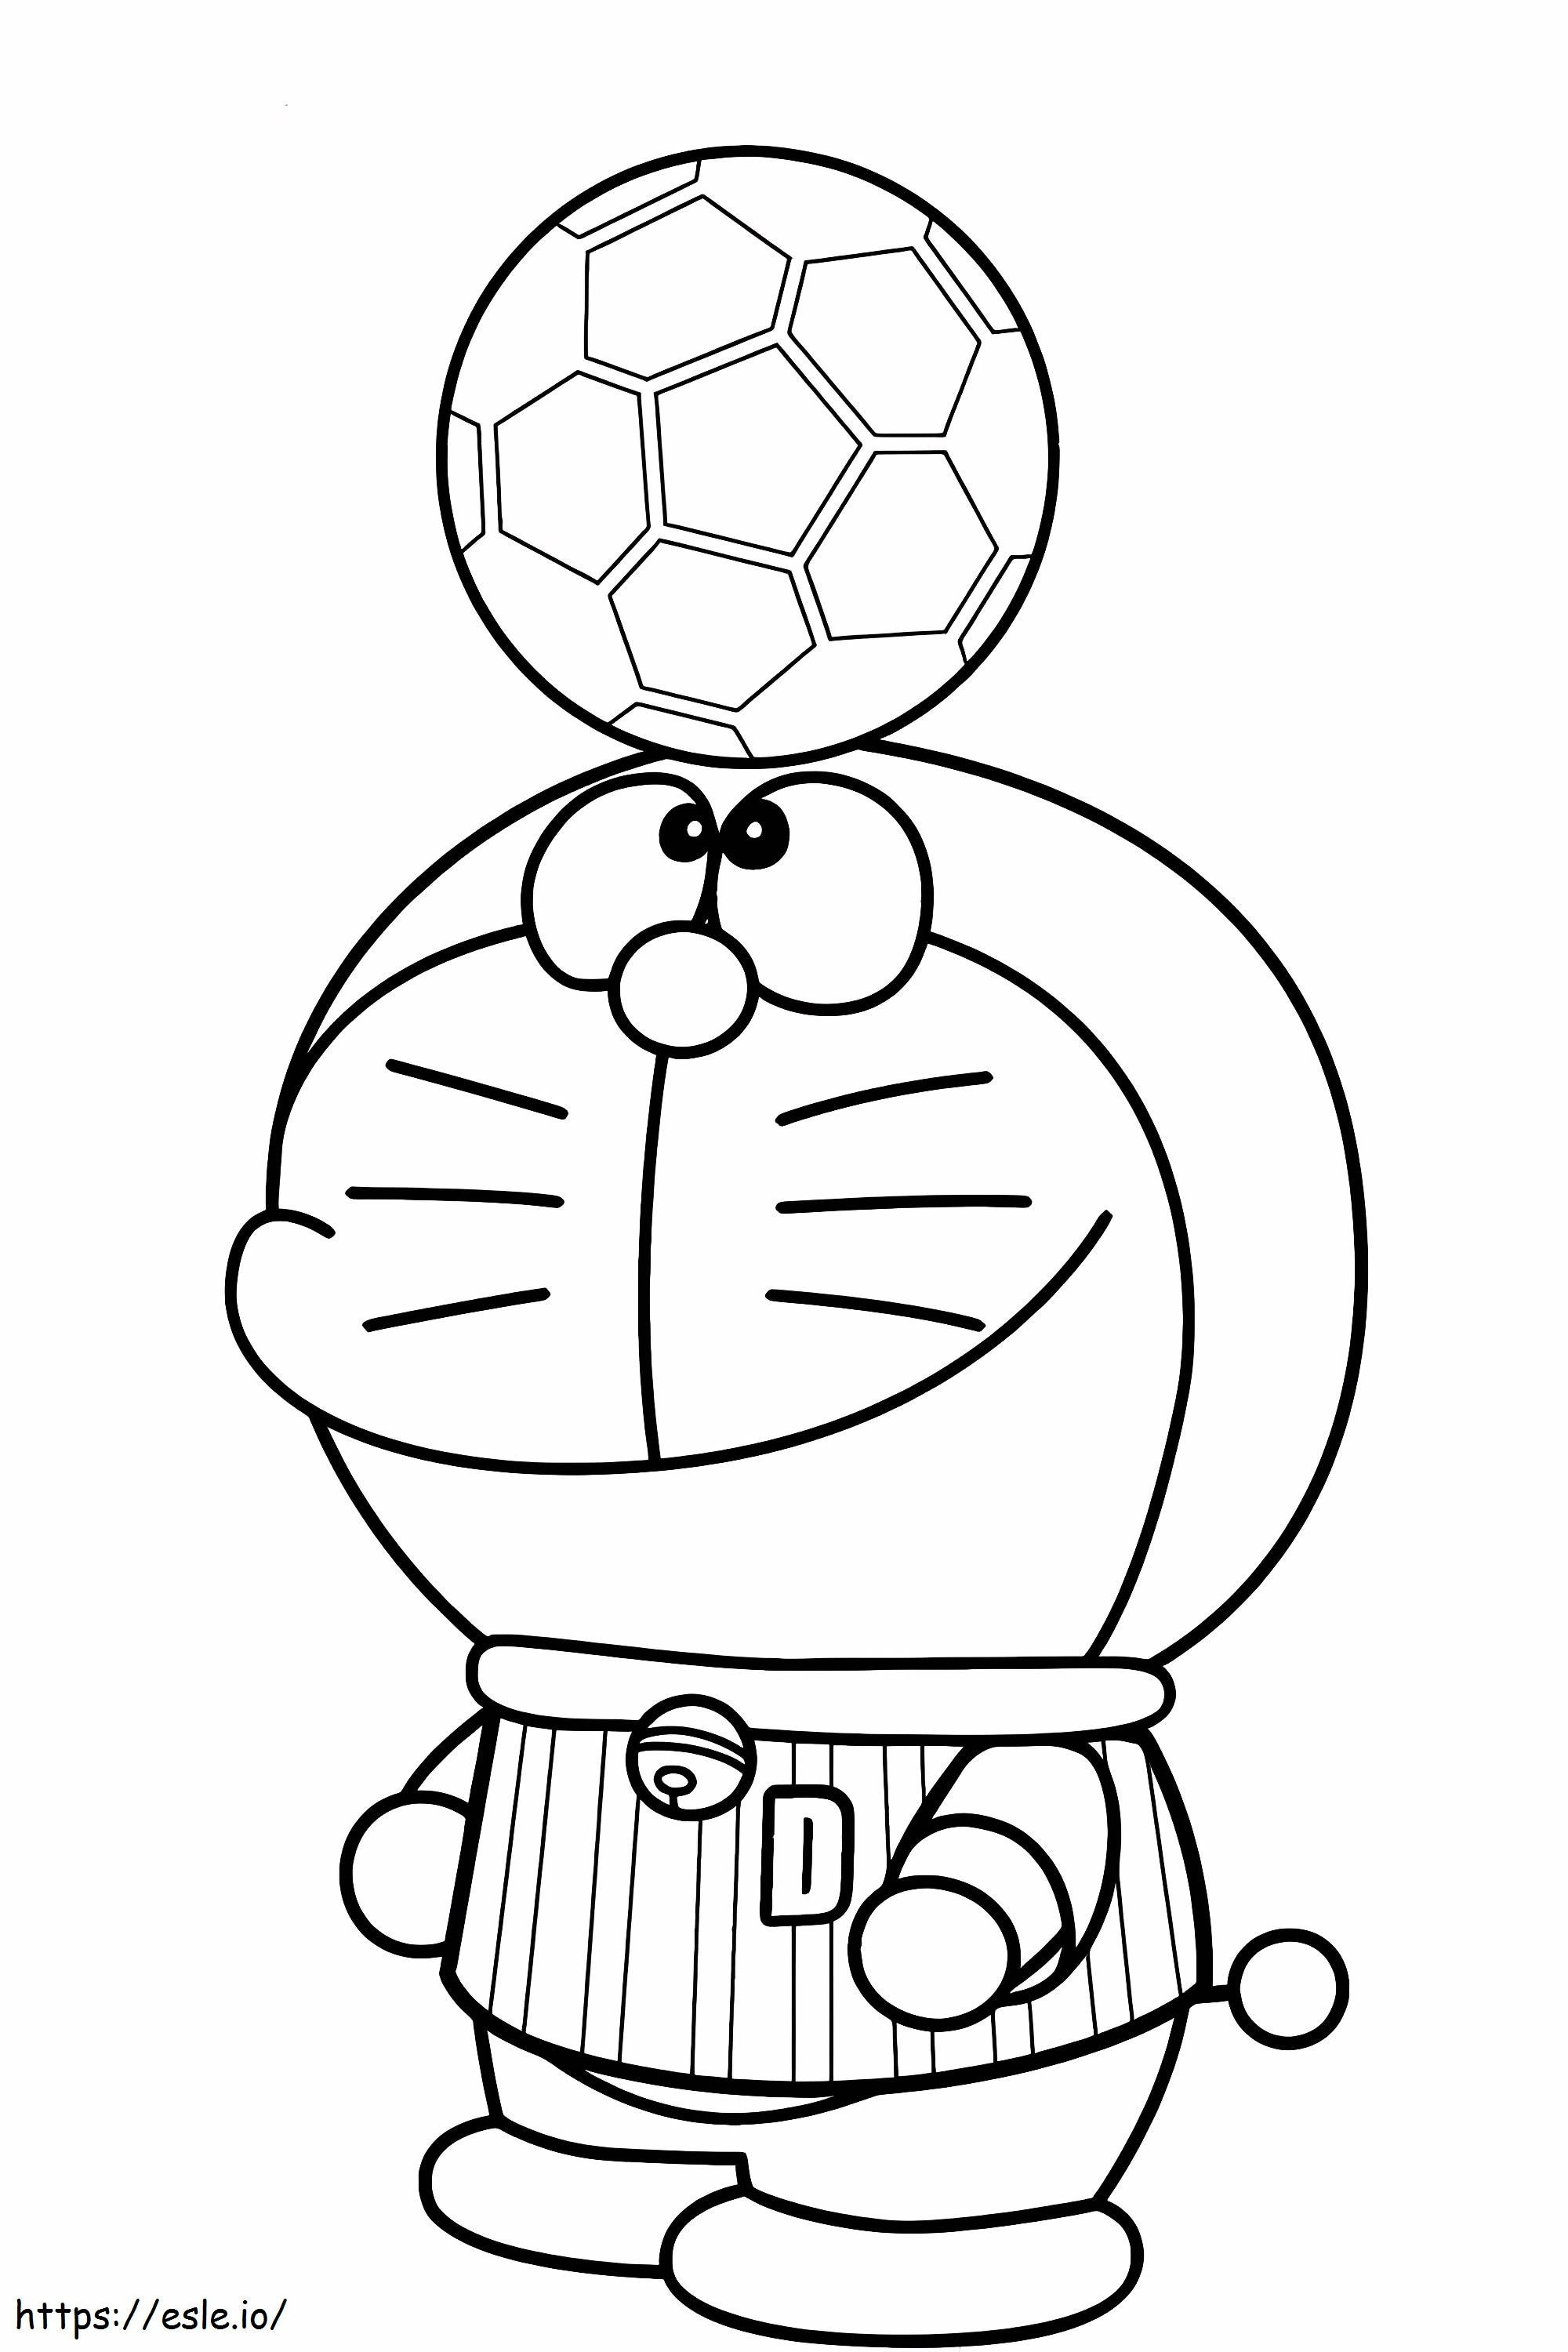 1540782584_Saya Suka Sepak Bola Gambar Mewarnai Doraemon Cantik Garis Pesulap Doraemon Saya Suka Sepak Bola Gambar Mewarnai